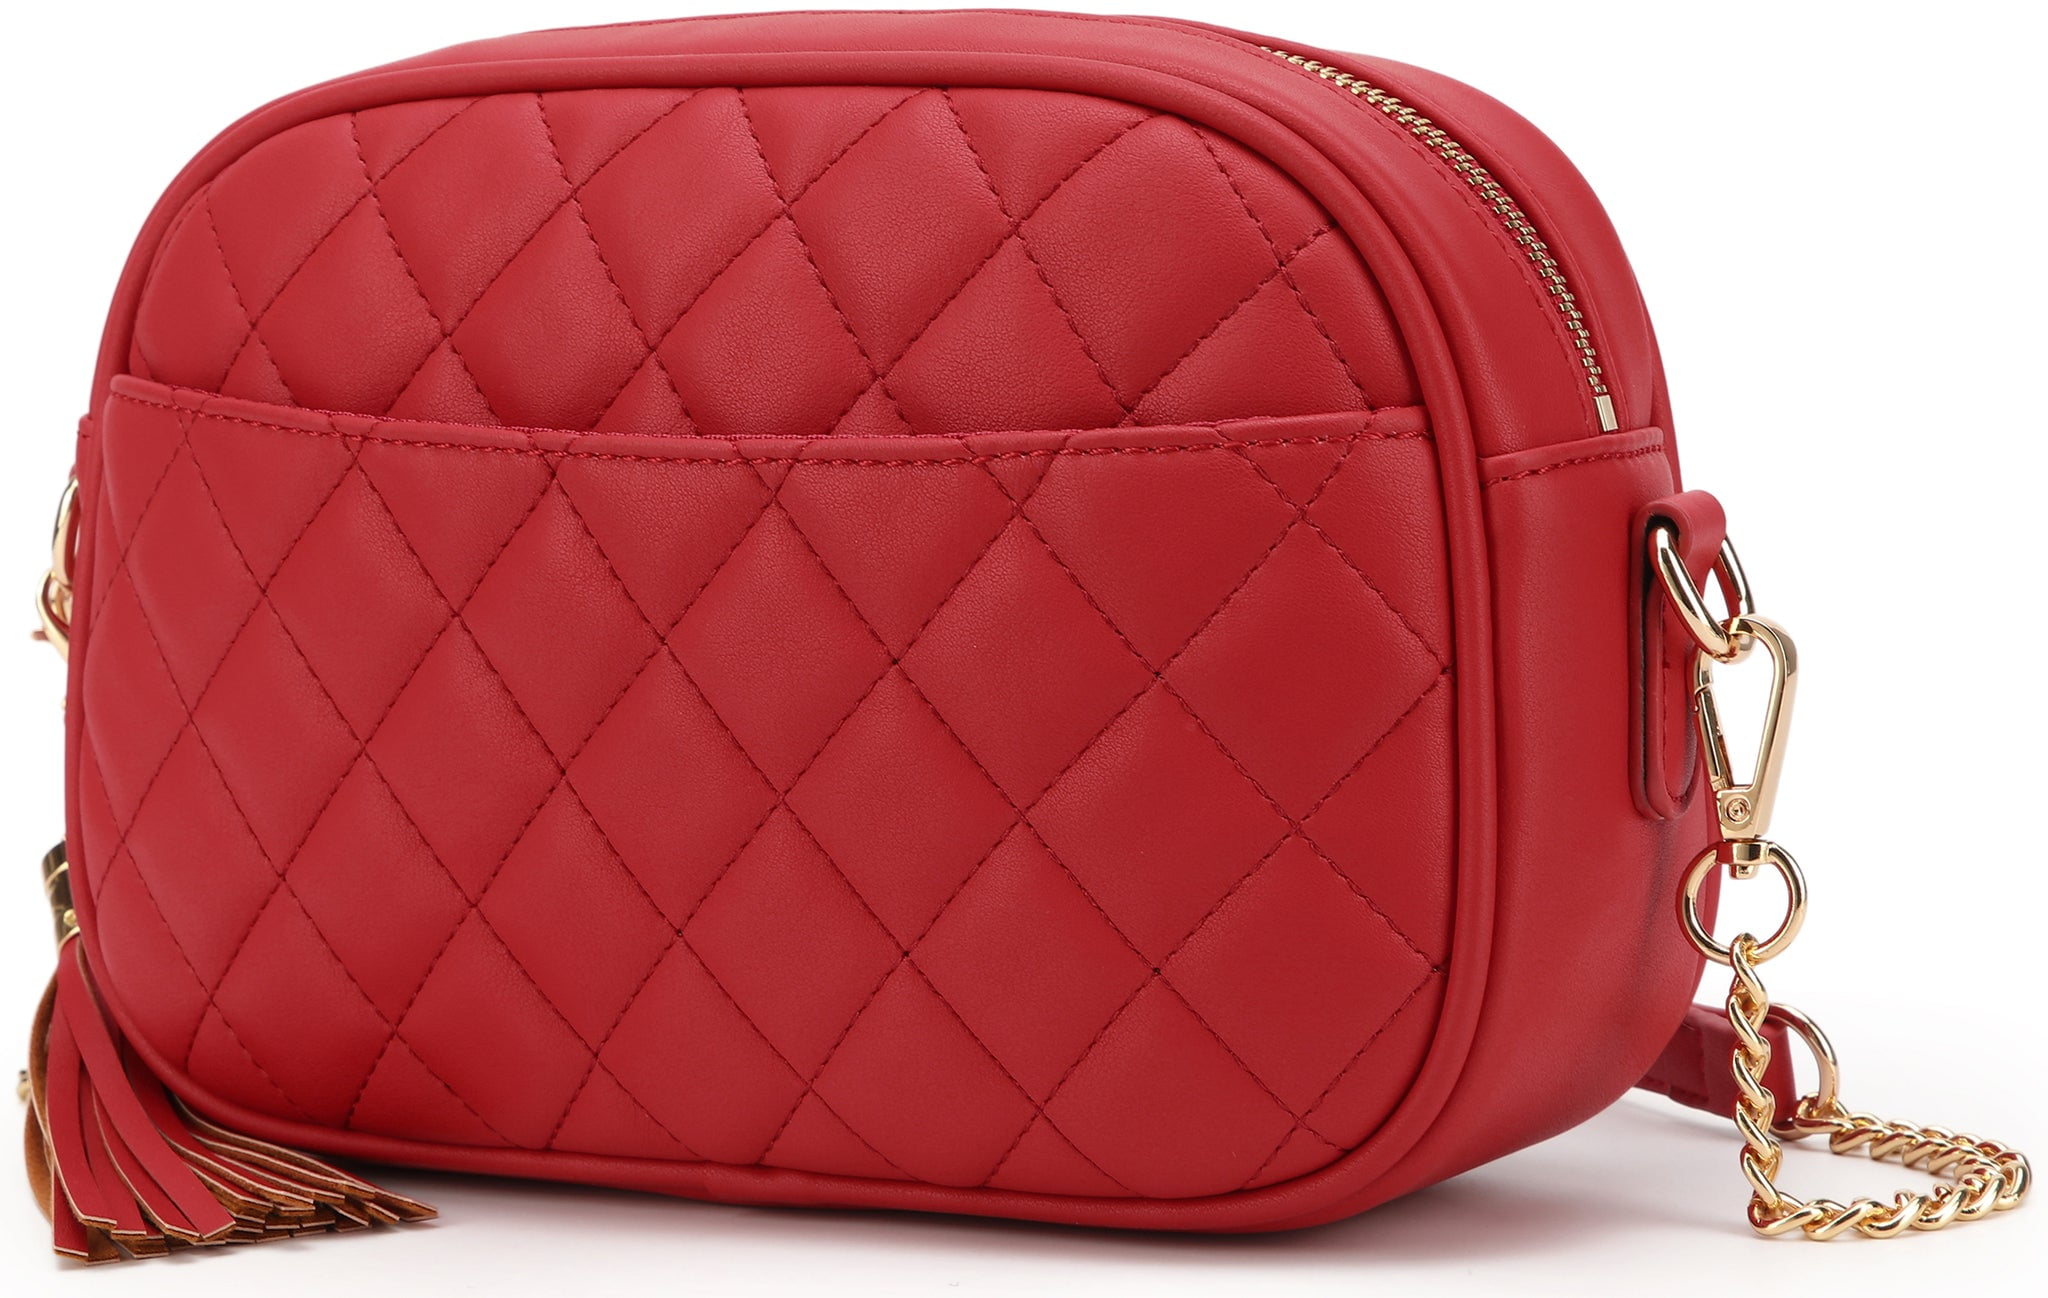 CANNA LAURA Crossbody Bag with Zipper Pocket Shoulder Strap Purse Top  Zipper Handbag for Women Ladies bag